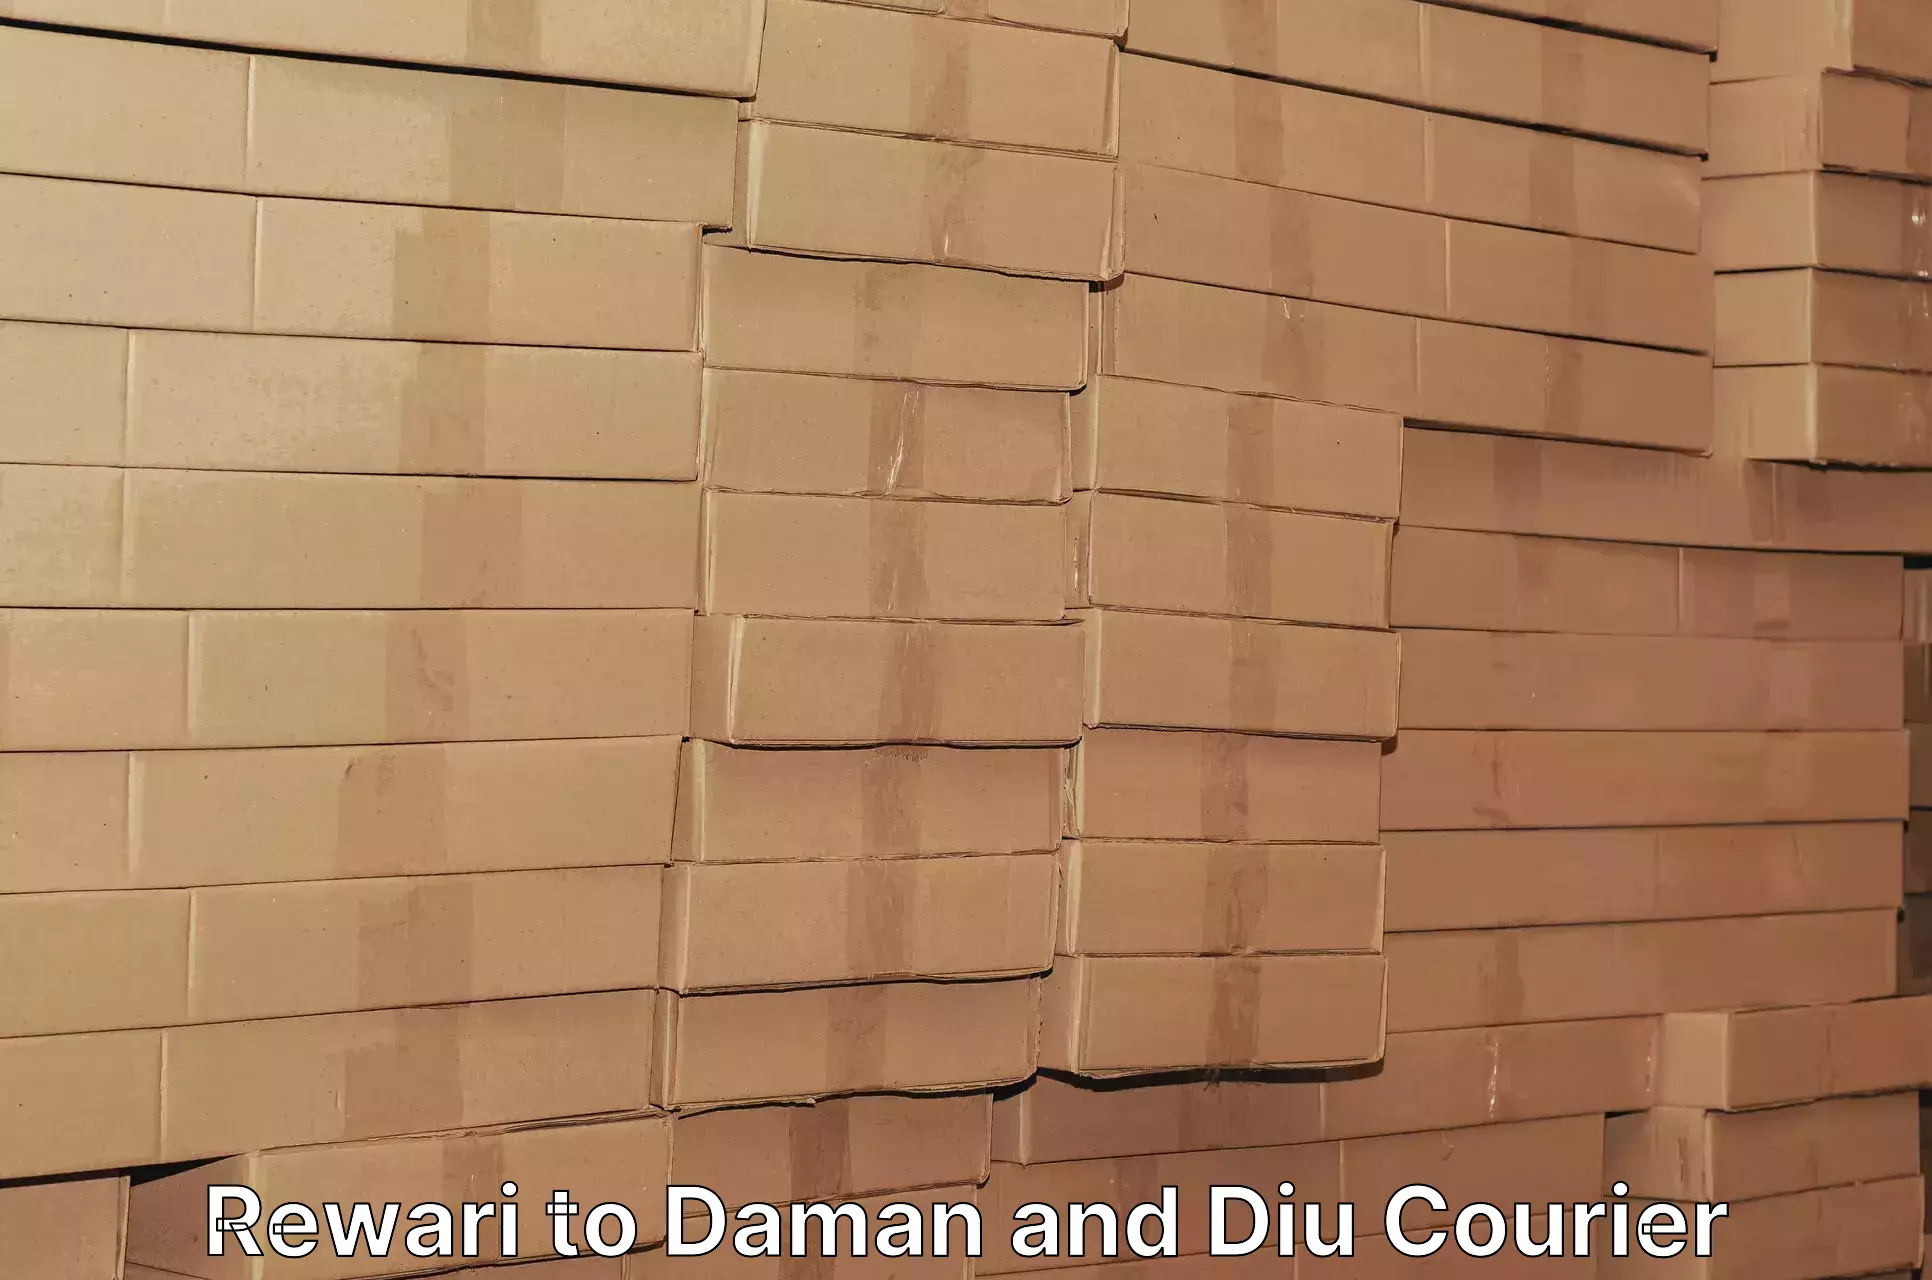 Discount courier rates Rewari to Daman and Diu